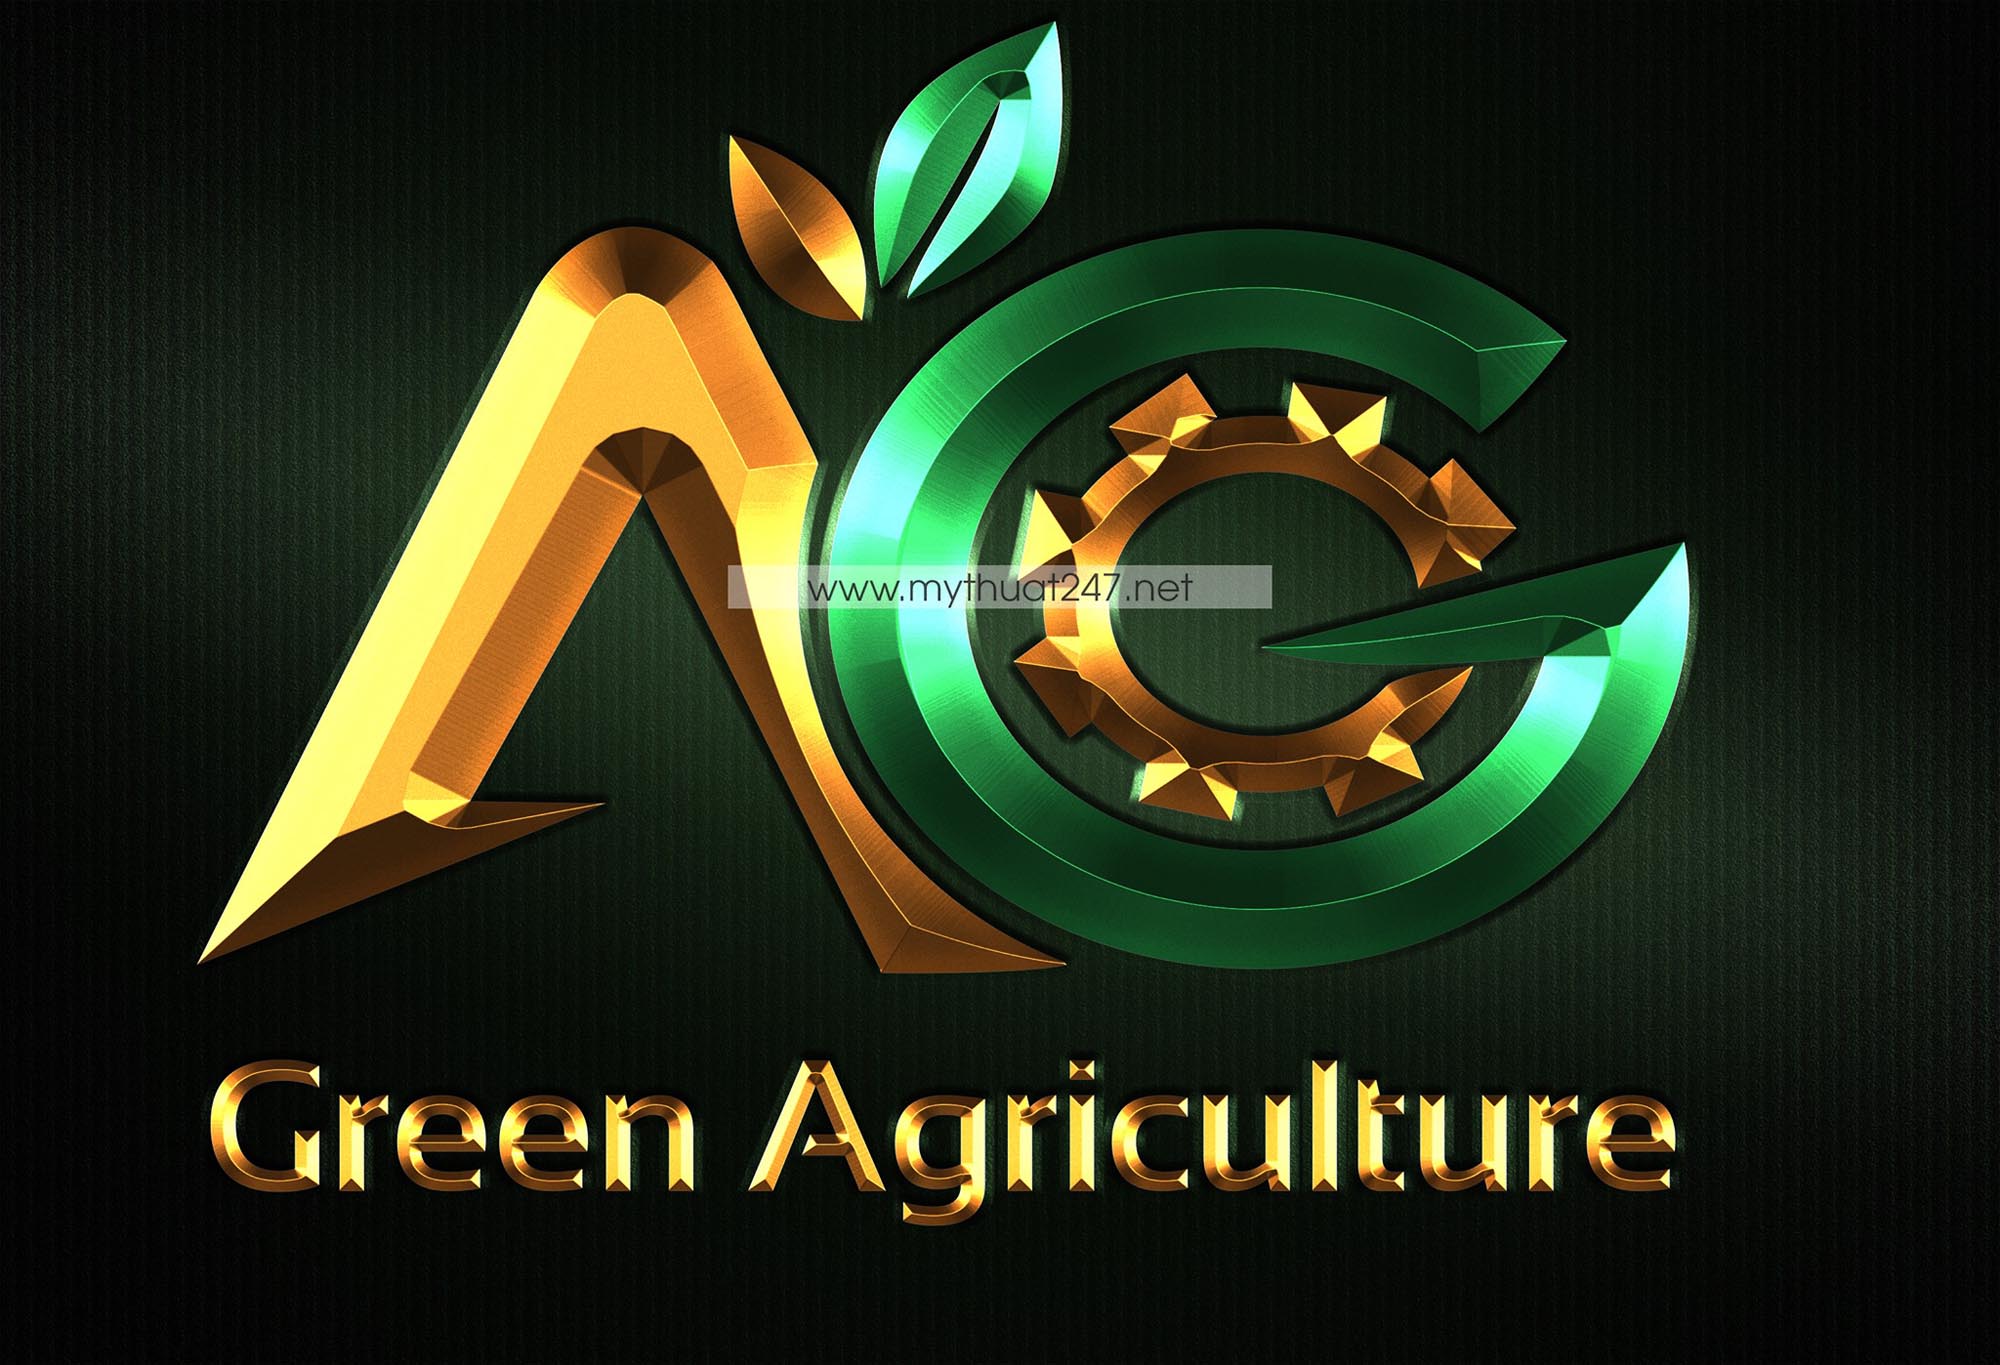 Thiết Kế logo công ty thiết bị nông nghiệp xanh